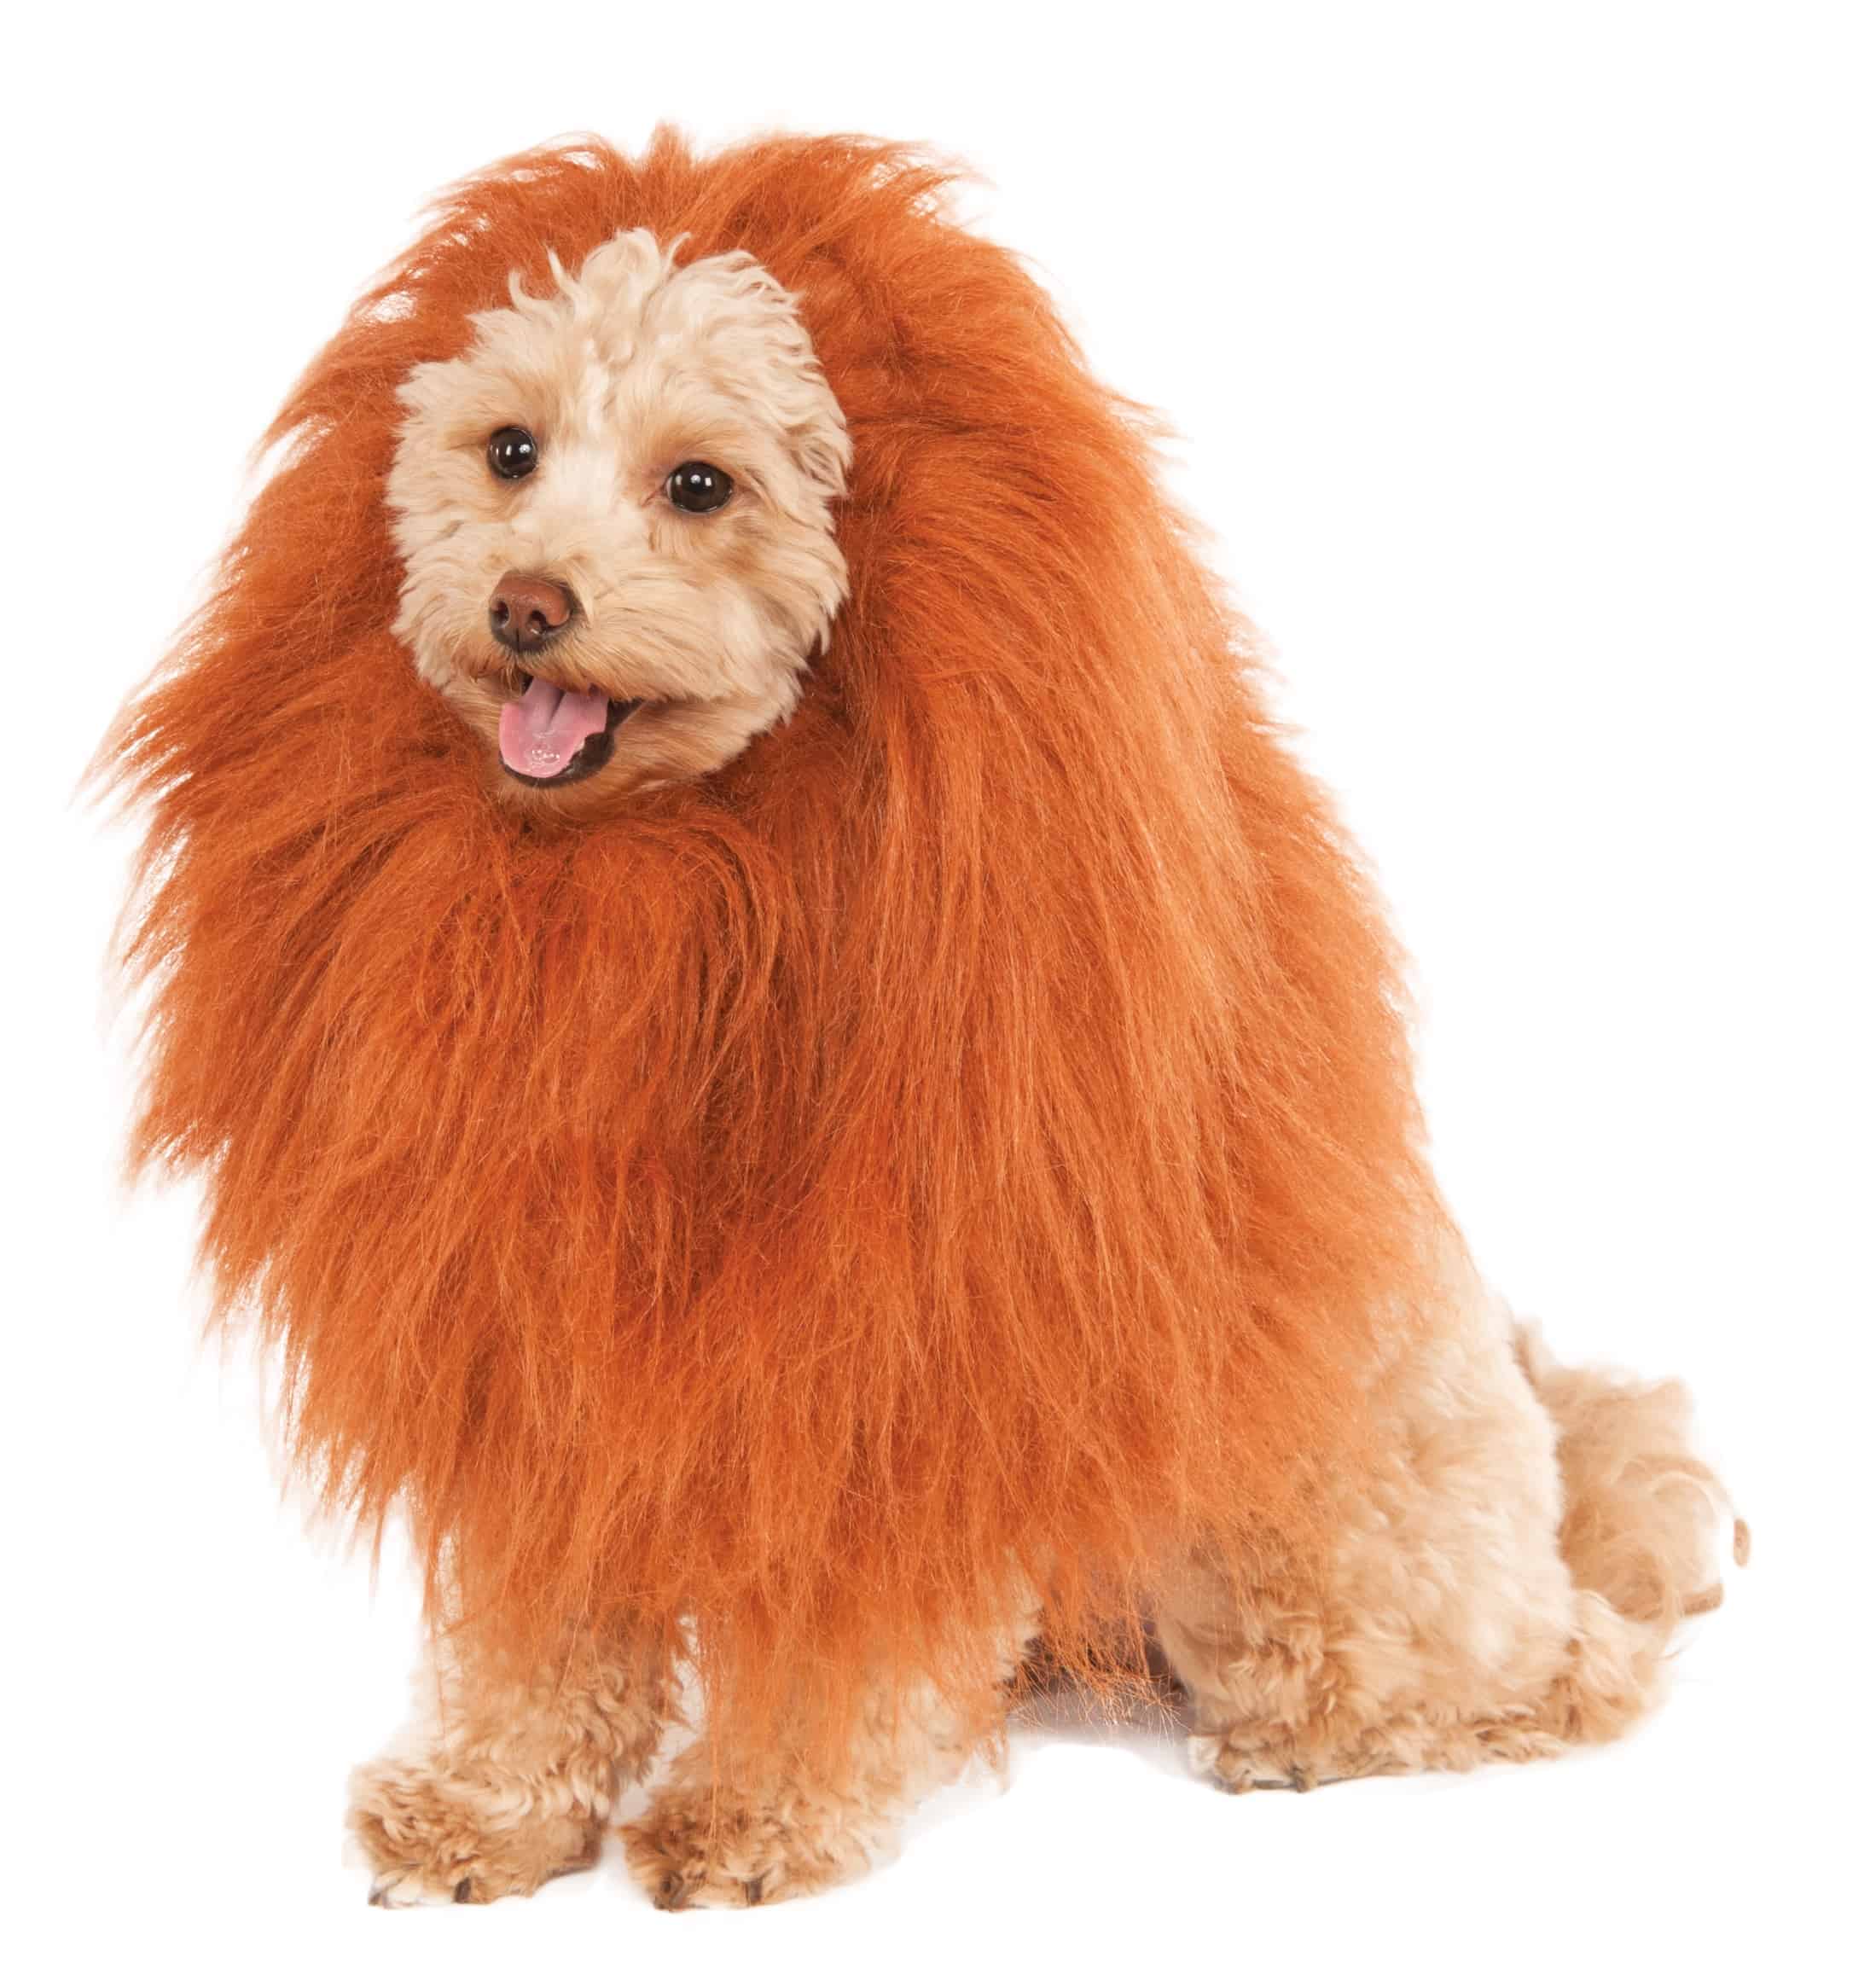 GTHUNDER Dog Lion Mane,Pet Dog Lion Mane Costume,Adjustable Lion Mane for Dog Funny Halloween Lion Costume with Ear Dog Wig for Medium or Large Sized Dogs 